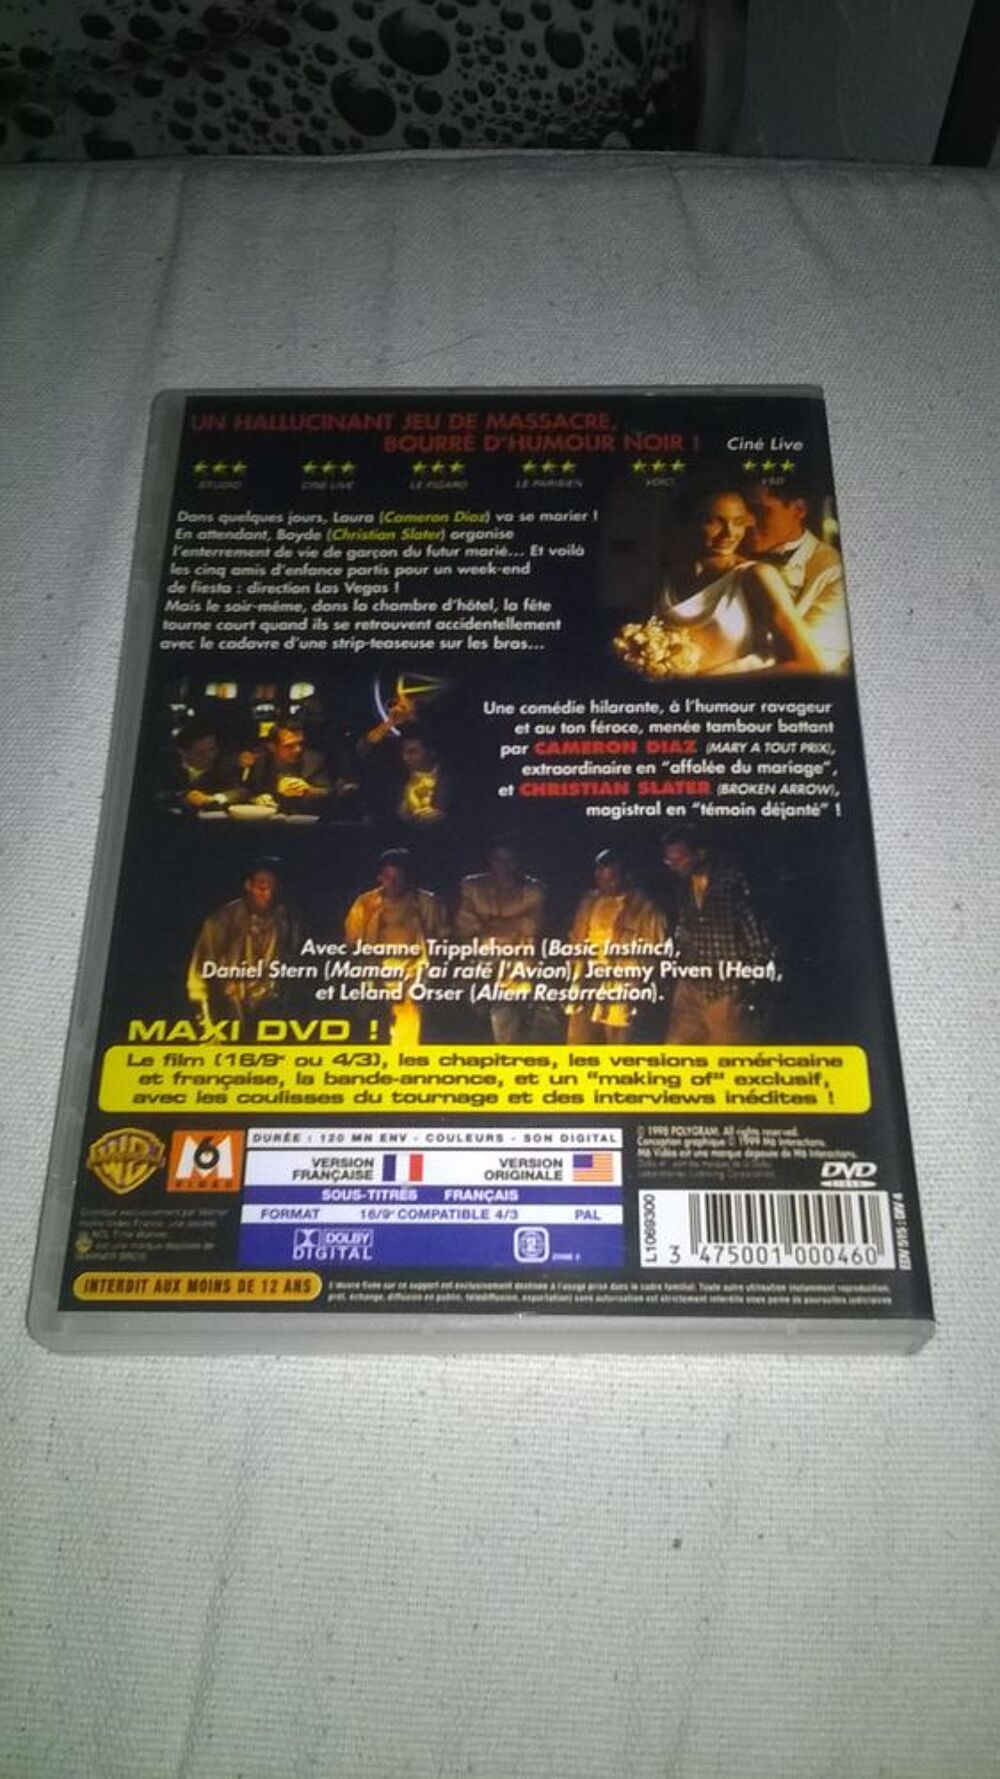 DVD Very Bad Things
Cameron Diaz
1998
Excellent etat
En DVD et blu-ray